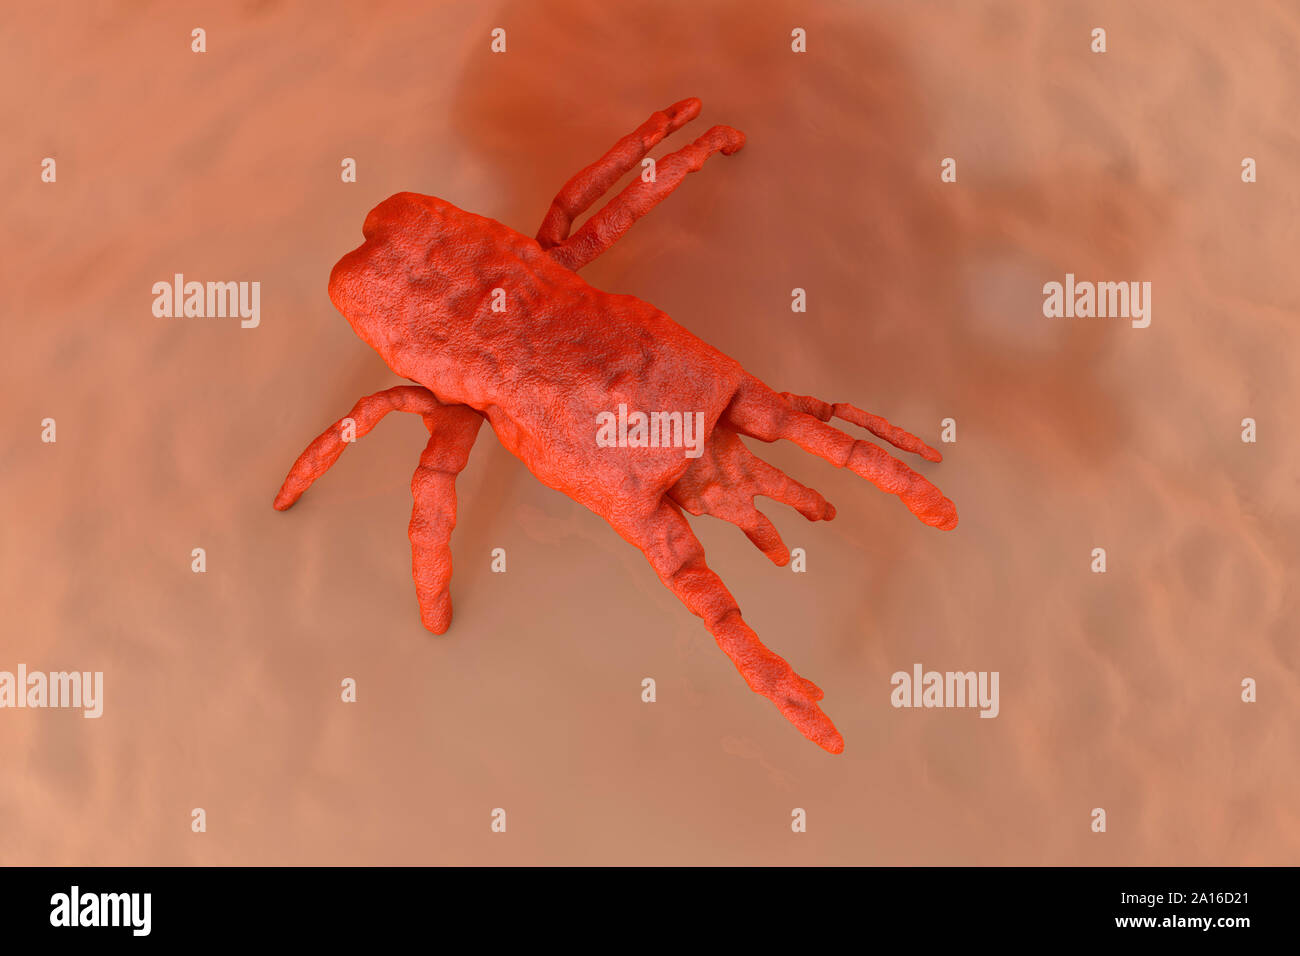 Illustration en rendu 3D Visualisation des acariens sur la peau d'orange Banque D'Images